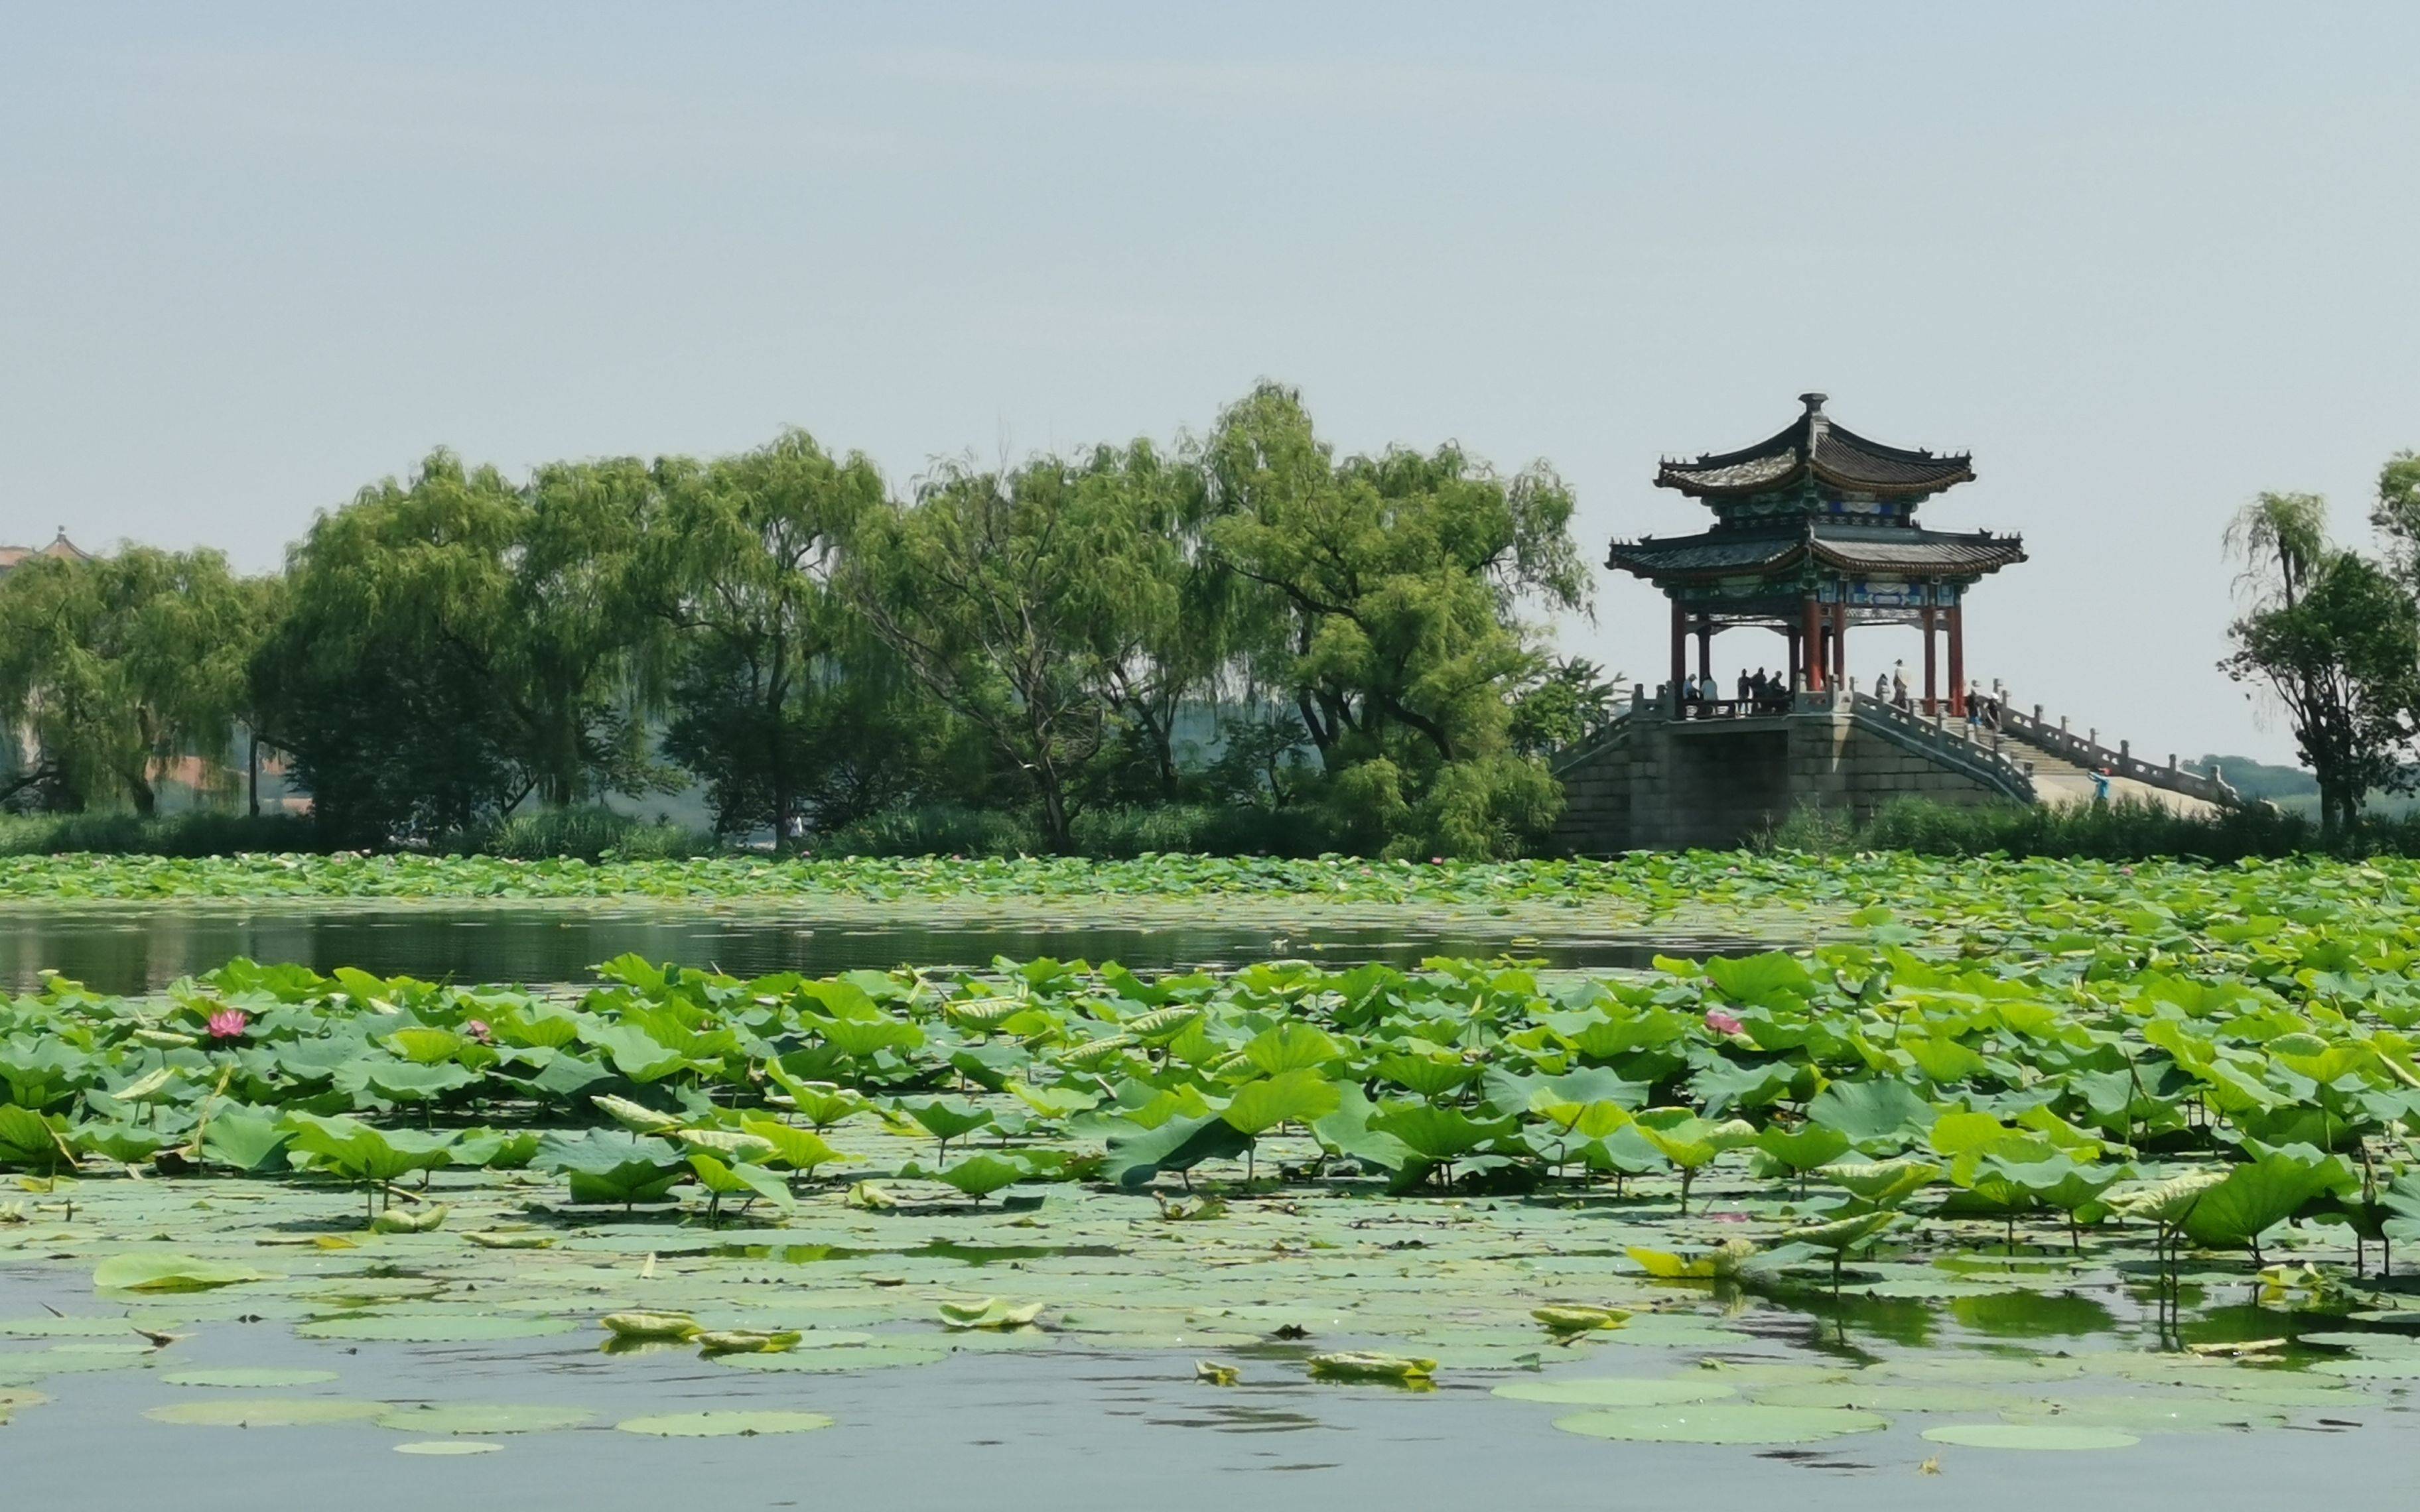 北京荷花文化节设十二大展区 400多种水生植物扮靓盛夏